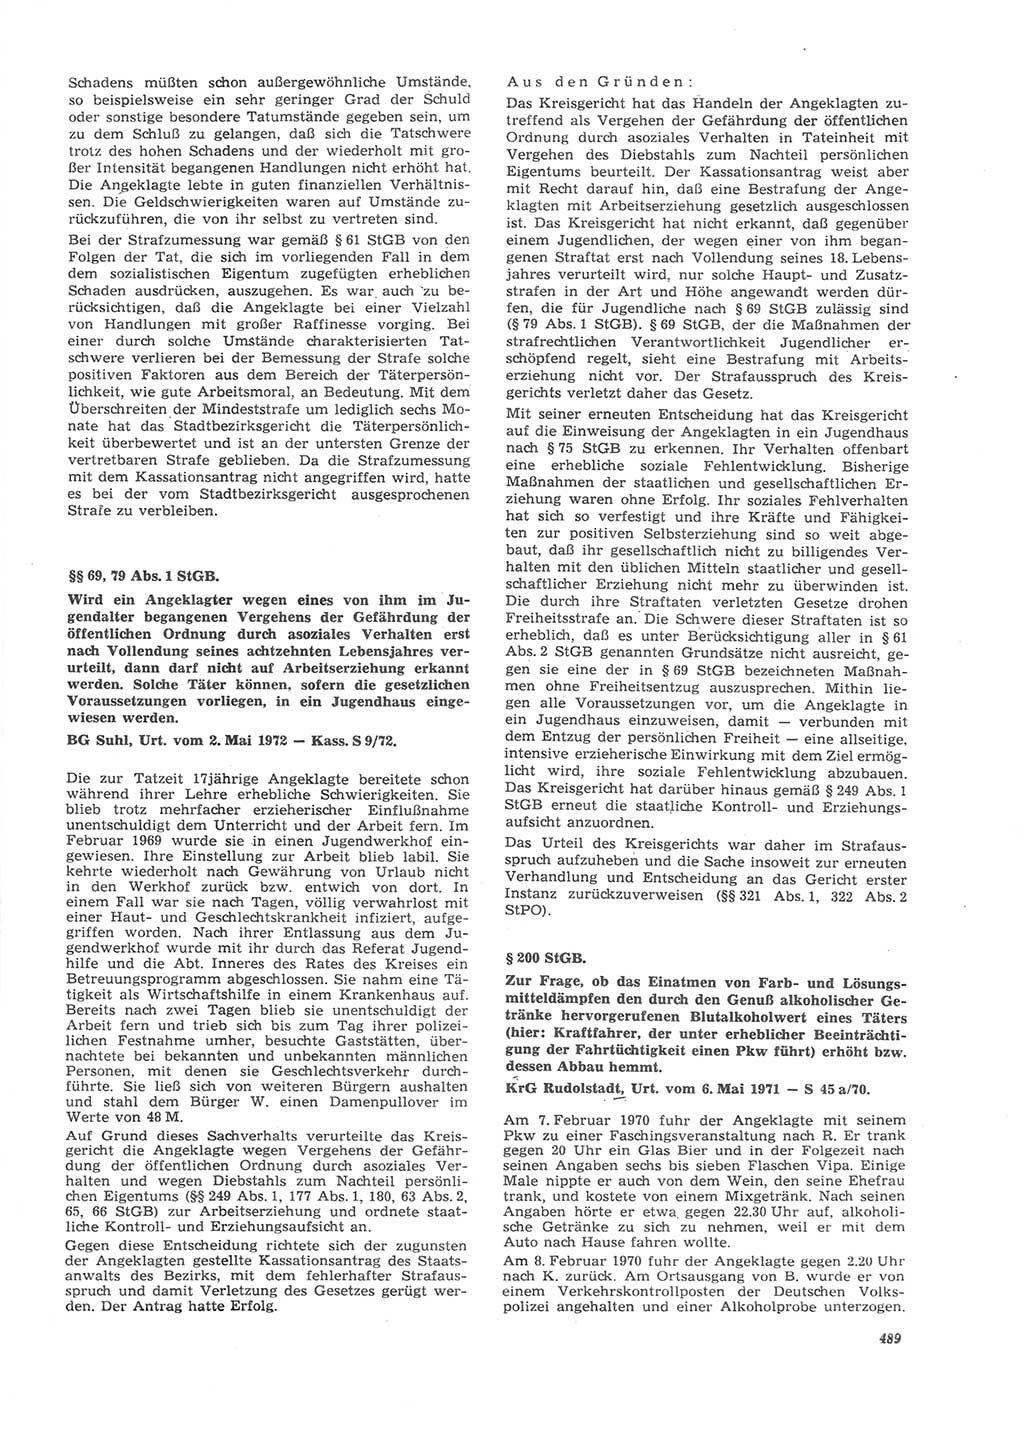 Neue Justiz (NJ), Zeitschrift für Recht und Rechtswissenschaft [Deutsche Demokratische Republik (DDR)], 26. Jahrgang 1972, Seite 489 (NJ DDR 1972, S. 489)